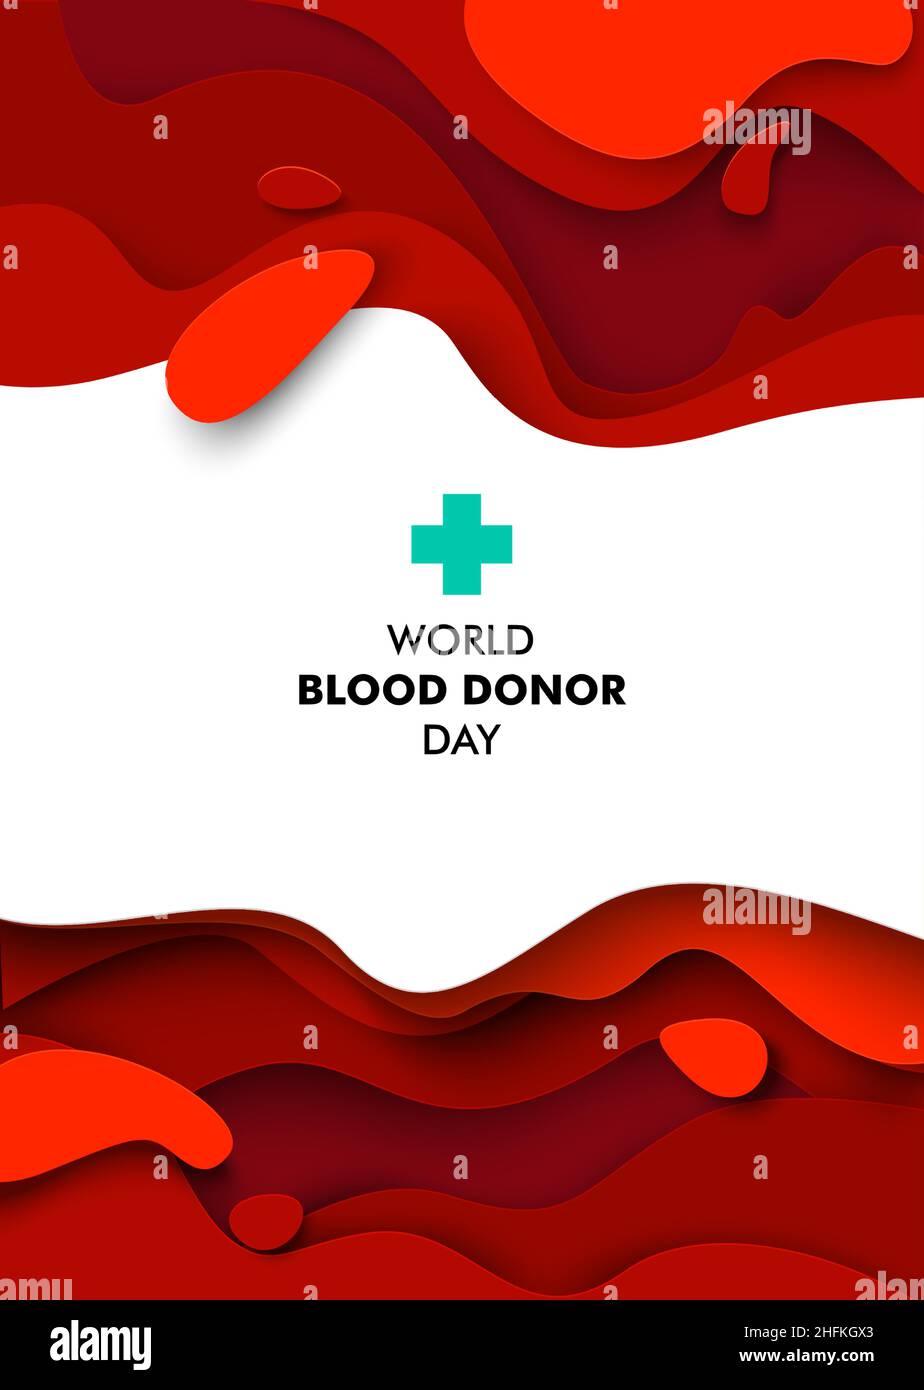 Blood donation: Hình ảnh về quy trình hiến máu có thể không đủ hấp dẫn nhưng chúng ta không thể phủ nhận tầm quan trọng của nó. Khi hiến máu, bạn đang cứu giúp mạng sống bất kỳ ai đang trong hoàn cảnh khó khăn. Hãy cùng xem hình ảnh này để thấy rõ giá trị của nó. 